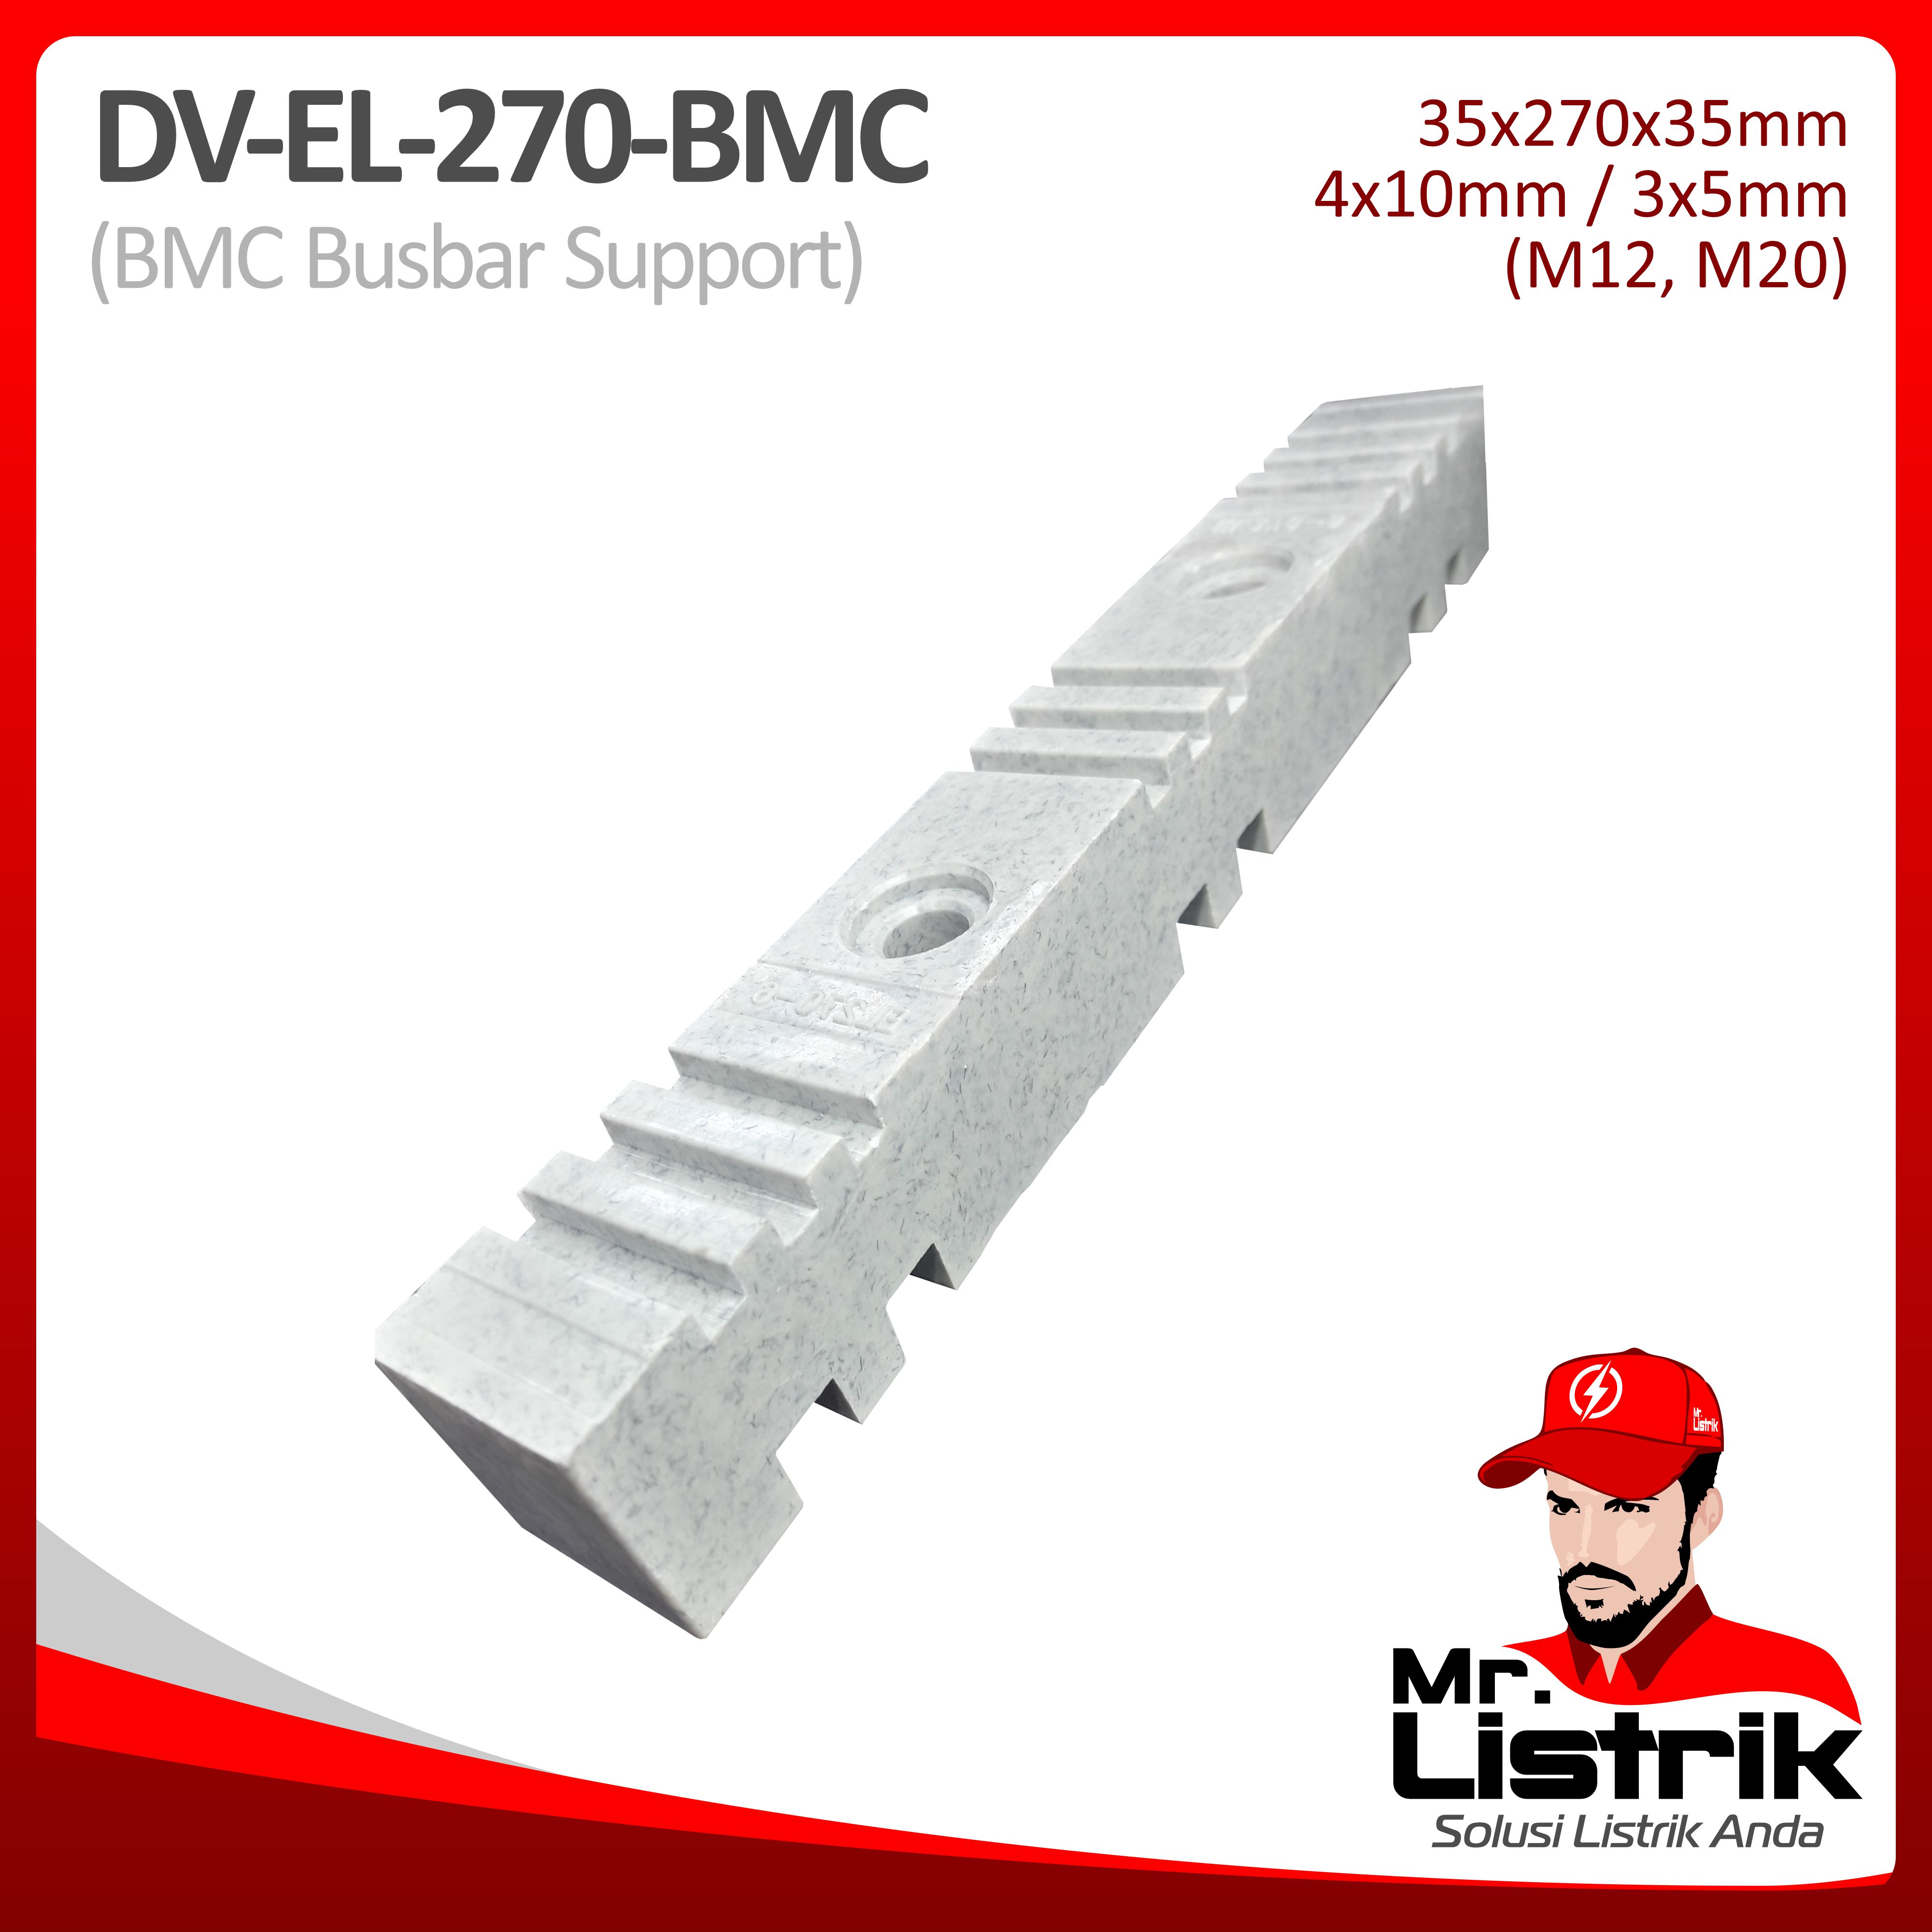 Busbar Support BMC DV EL-270-BMC